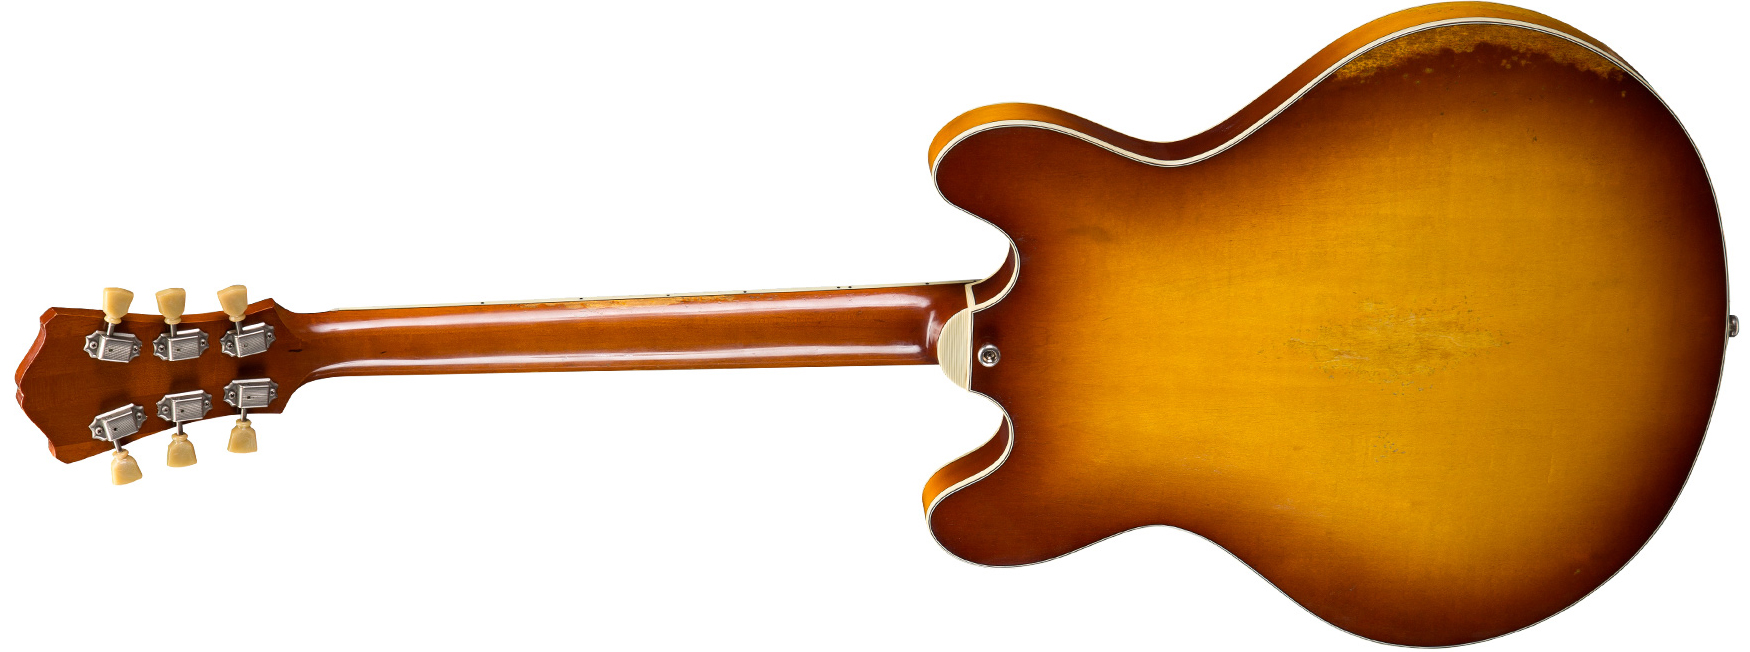 Eastman T64/v Thinline Laminate Tout Erable 2p90 Lollar Ht Eb - Antique Gold Burst - Semi-hollow electric guitar - Variation 2